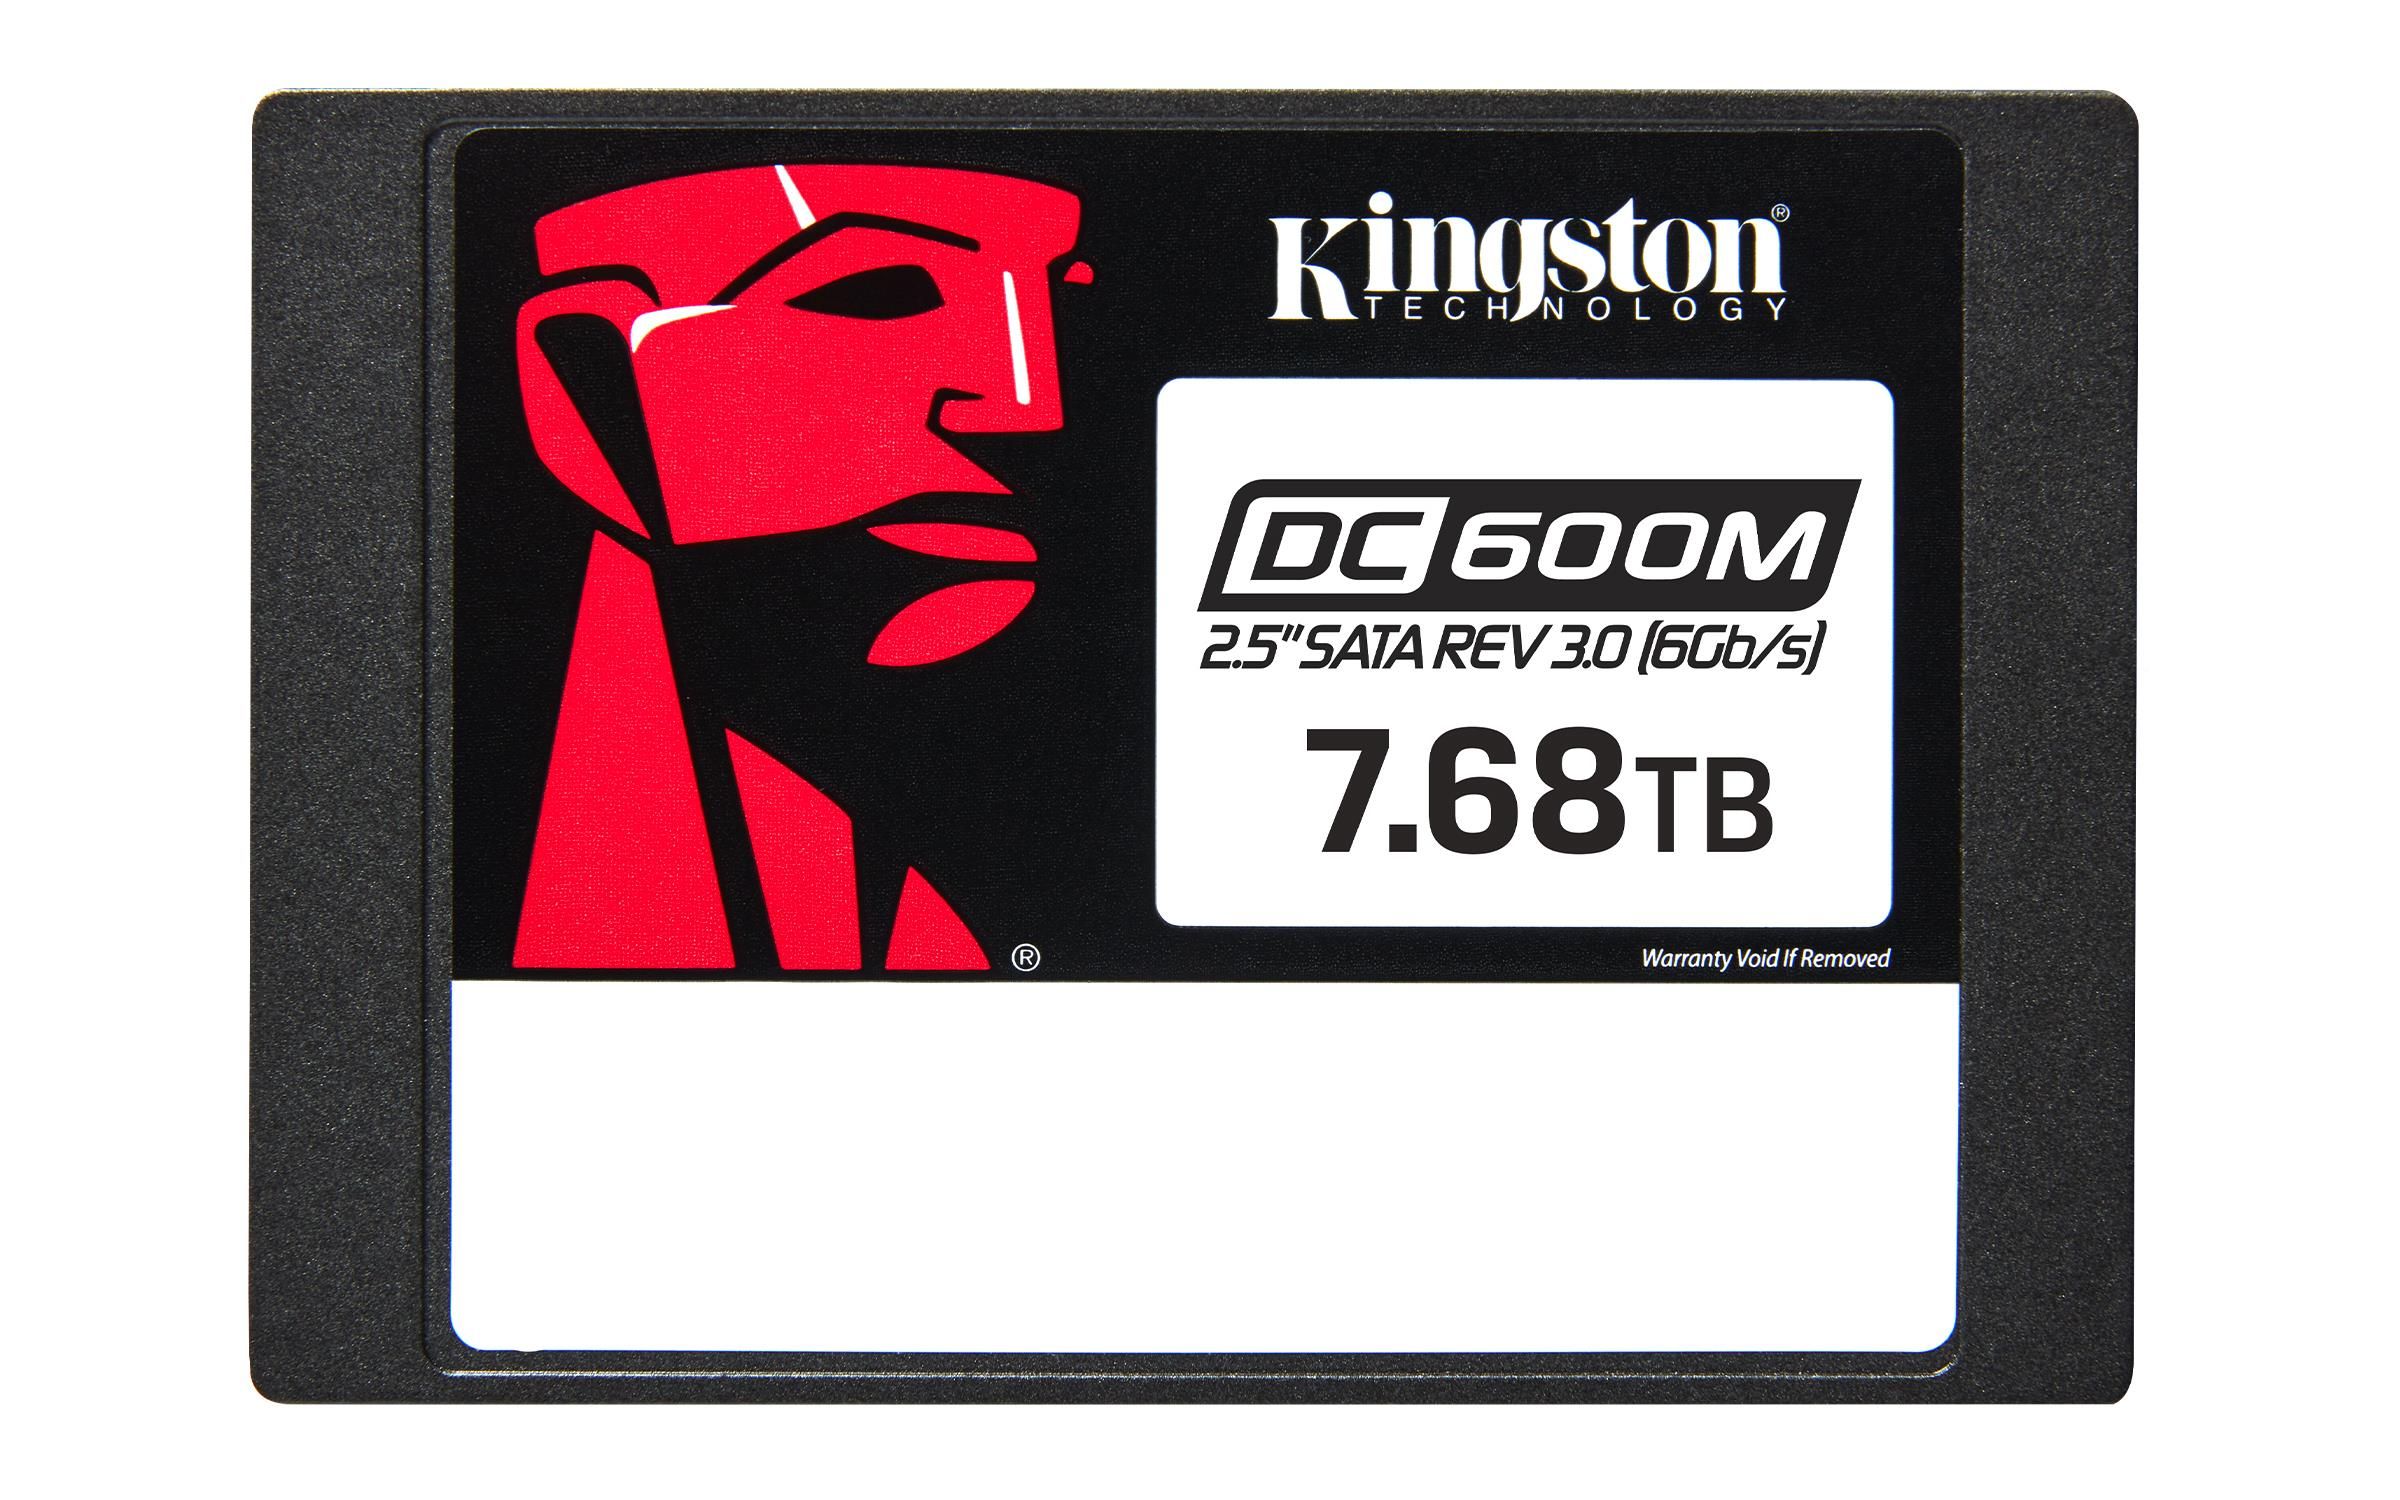 Kingston DC600M SSD Mixed